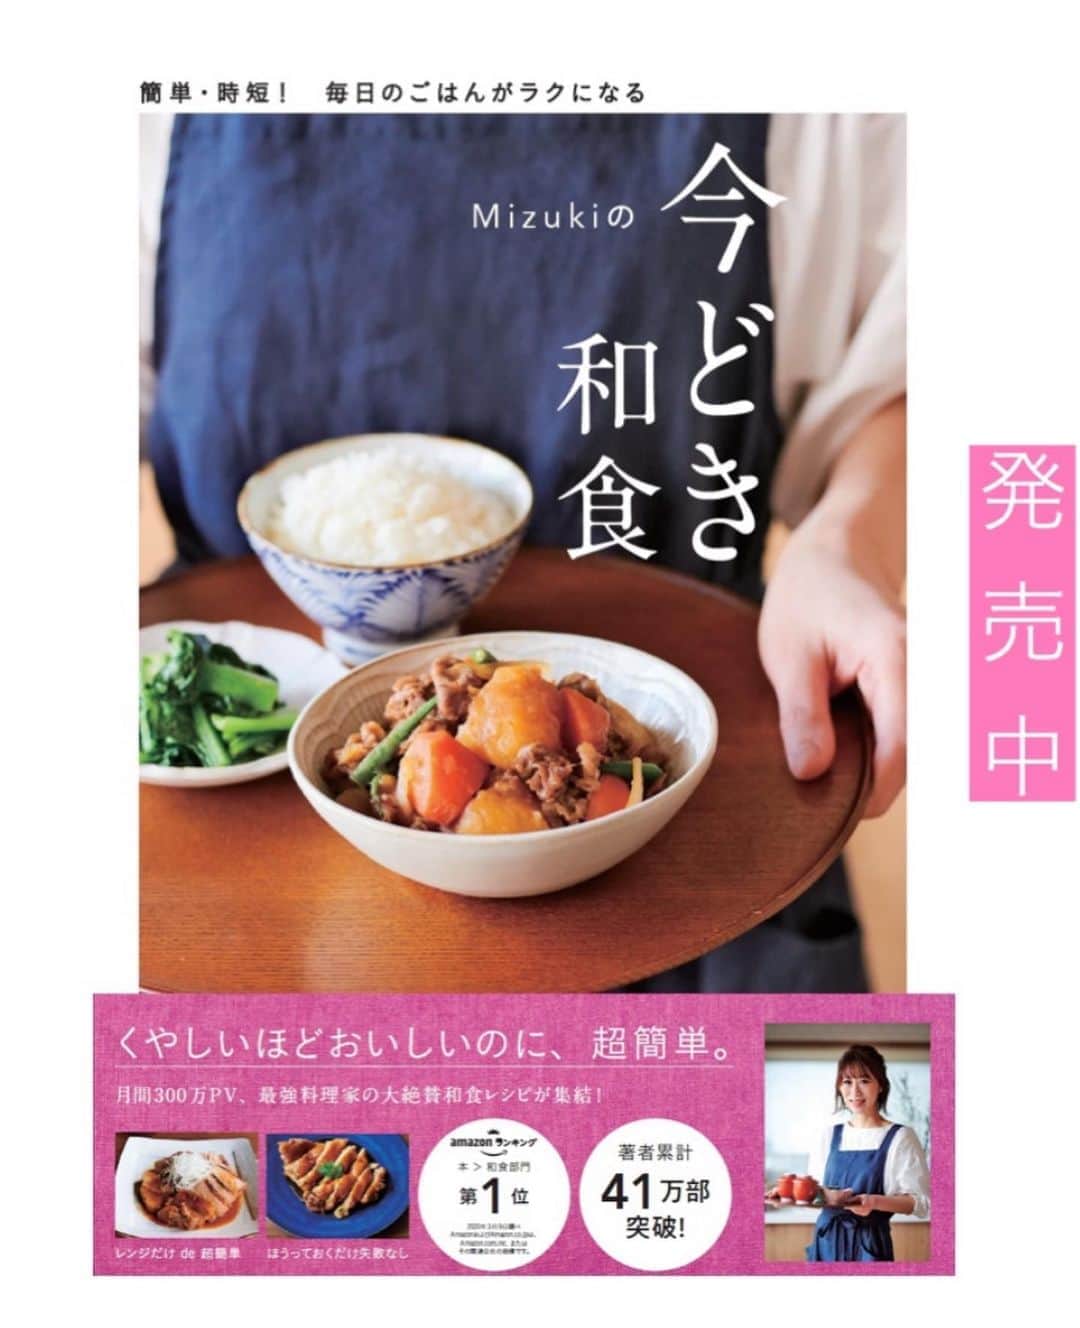 Mizuki【料理ブロガー・簡単レシピ】さんのインスタグラム写真 - (Mizuki【料理ブロガー・簡単レシピ】Instagram)「・﻿ 【レシピ】ーーーーーーーーーー﻿ ♡豚肉ともやしの塩あんかけ♡﻿ ーーーーーーーーーーーーーーー﻿ ﻿ ﻿ ﻿ おはようございます(*^^*)﻿ ﻿ 今日ご紹介させていただくは﻿ ［豚こま×もやし］のコスパおかず！﻿ フライパンでさっと炒めて﻿ 塩あんかけ風に仕上げました♩﻿ あっさりコクのあるあんかけで﻿ ごはんにもお酒にも合いますよ〜💕﻿ ﻿ 面倒なとろみ付けなし！で﻿ 超簡単にできるので﻿ よかったらお試し下さいね(*´艸`)﻿ ﻿ ﻿ ﻿ ーーーーーーーーーーーーーーーーーーーー﻿ 【2人分】﻿ 豚こま切れ肉...150g﻿ もやし...1袋﻿ しめじ...1/2袋﻿ ごま油...小2﻿ ●水...200ml﻿ ●塩・鶏がらスープ・醤油...各小1/2﻿ ●にんにくチューブ...2cm﻿ ●片栗粉...小2﻿ 万能ねぎ...適量﻿ ﻿ 1.しめじはほぐす。●は合わせておく。﻿ 2.フライパンにごま油を中火で熱して豚肉を炒める。火が通ったらもやしとしめじも加えてさっと炒める。﻿ 3.●をもう一度混ぜてから加え、混ぜながらとろみを付ける。器に盛り、小口切りにしたねぎをのせる。﻿ ーーーーーーーーーーーーーーーーーーーー﻿ ﻿ ﻿ ﻿ 《ポイント》﻿ ♦︎4cm長さにきった豚バラで作っても◎﻿ ♦︎大人は仕上げに粗挽き黒こしょうを振っても美味しいです♩﻿ ﻿ ﻿ ﻿ ﻿ ﻿ ﻿ ﻿ 🆕🆕🆕🆕🆕🆕🆕🆕🆕🆕﻿ おかげさまで［今どき和食］が﻿ 8刷重版となりました(涙)﻿ 本当にありがとうございます！！﻿ 皆さんのおかげです（ ; ; ）💕﻿ 🆕🆕🆕🆕🆕🆕🆕🆕🆕🆕﻿ ↓ ↓ ↓﻿ ＿＿＿＿＿＿＿＿＿＿＿＿＿＿＿＿＿＿＿﻿ 📕8刷重版しました📕﻿ 簡単・時短！ 毎日のごはんがラクになる﻿ ✨🦋 【 #Mizukiの今どき和食 】🦋✨﻿ ＿＿＿＿＿＿＿＿＿＿＿＿＿＿＿＿＿＿＿﻿ なるべく少ない材料で﻿ 手間も時間も省きながら﻿ 簡単にできるおいしい和食レシピ♩﻿ 簡単に失敗なくマスターできる一冊で﻿ もっと気軽に、カジュアルに﻿ 和食を楽しんで下さいね(*^^*)﻿ ＿＿＿＿＿＿＿＿＿＿＿＿＿＿＿＿＿＿＿﻿ ﻿ ﻿ ﻿ ＿＿＿＿＿＿＿＿＿＿＿＿＿＿＿＿＿＿＿﻿ 🎀6刷重版しました🎀﻿ 混ぜて焼くだけ。はじめてでも失敗しない！﻿ 【#ホットケーキミックスのお菓子 】﻿ ﻿ 一冊まるっとホケミスイーツ♩﻿ 普段のおやつから﻿ 特別な日にも使えるレシピを﻿ この一冊に詰め込みました(*^^*)﻿ ホットケーキミックスを使えば﻿ 簡単に本格的なお菓子が作れますよ♡﻿ ＿＿＿＿＿＿＿＿＿＿＿＿＿＿＿＿＿﻿ ﻿ ﻿ ﻿ ﻿ ￣￣￣￣￣￣￣￣￣￣￣￣￣￣￣￣￣￣﻿ レシピを作って下さった際や﻿ レシピ本についてのご投稿には﻿ タグ付け( @mizuki_31cafe )して﻿ お知らせいただけると嬉しいです😊💕﻿ ＿＿＿＿＿＿＿＿＿＿＿＿＿＿＿＿＿＿﻿ ﻿ ﻿ ﻿ ﻿ ﻿ #豚肉#豚こま#もやし#塩あんかけ#節約おかず﻿ #Mizuki#簡単レシピ#時短レシピ#節約レシピ#料理#レシピ#フーディーテーブル#マカロニメイト#おうちごはん#デリスタグラマー#料理好きな人と繋がりたい#食べ物#料理記録#おうちごはんlover#写真好きな人と繋がりたい#foodpic#cooking#recipe#lin_stagrammer#foodporn#yummy#豚肉ともやしの塩あんかけm」9月2日 6時51分 - mizuki_31cafe